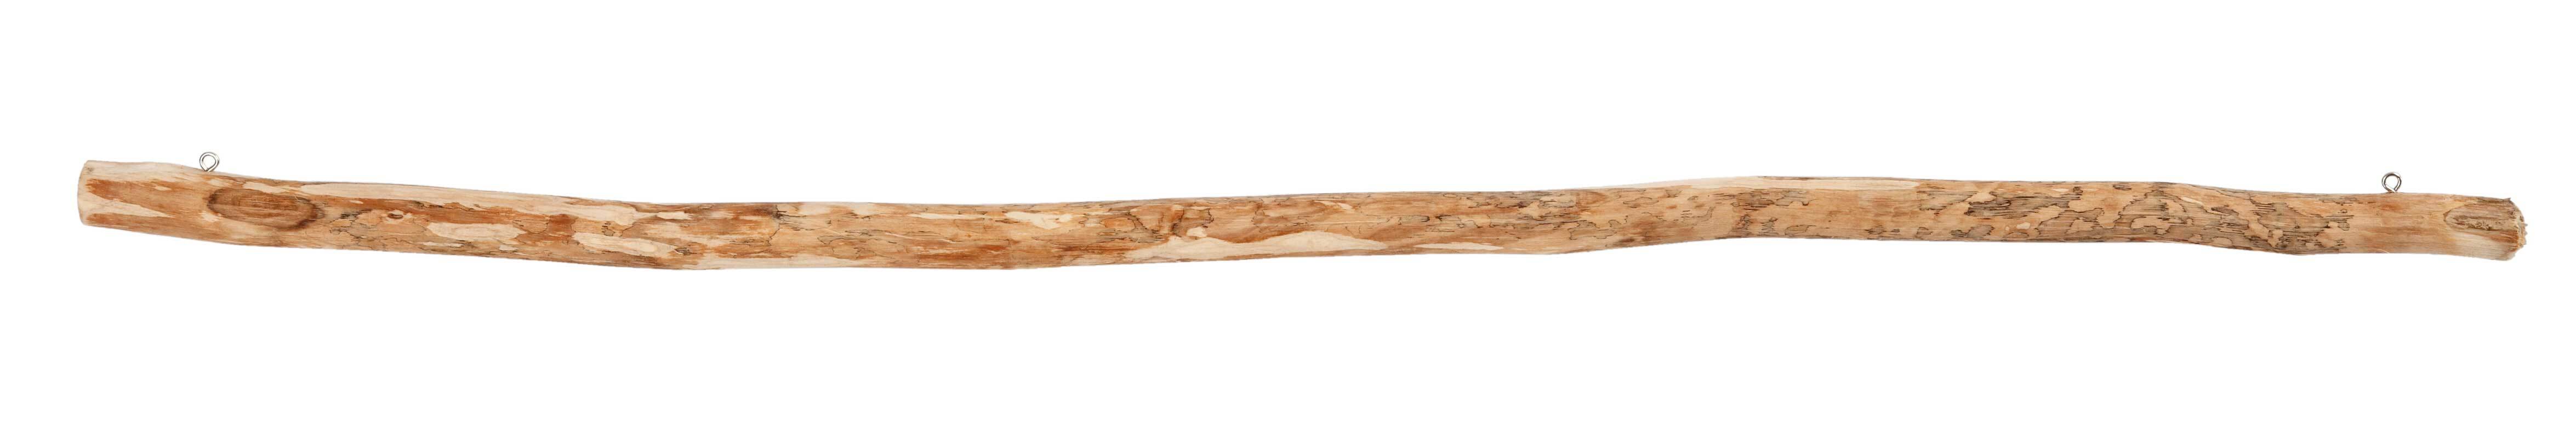 Bâton en bois, 60 cm